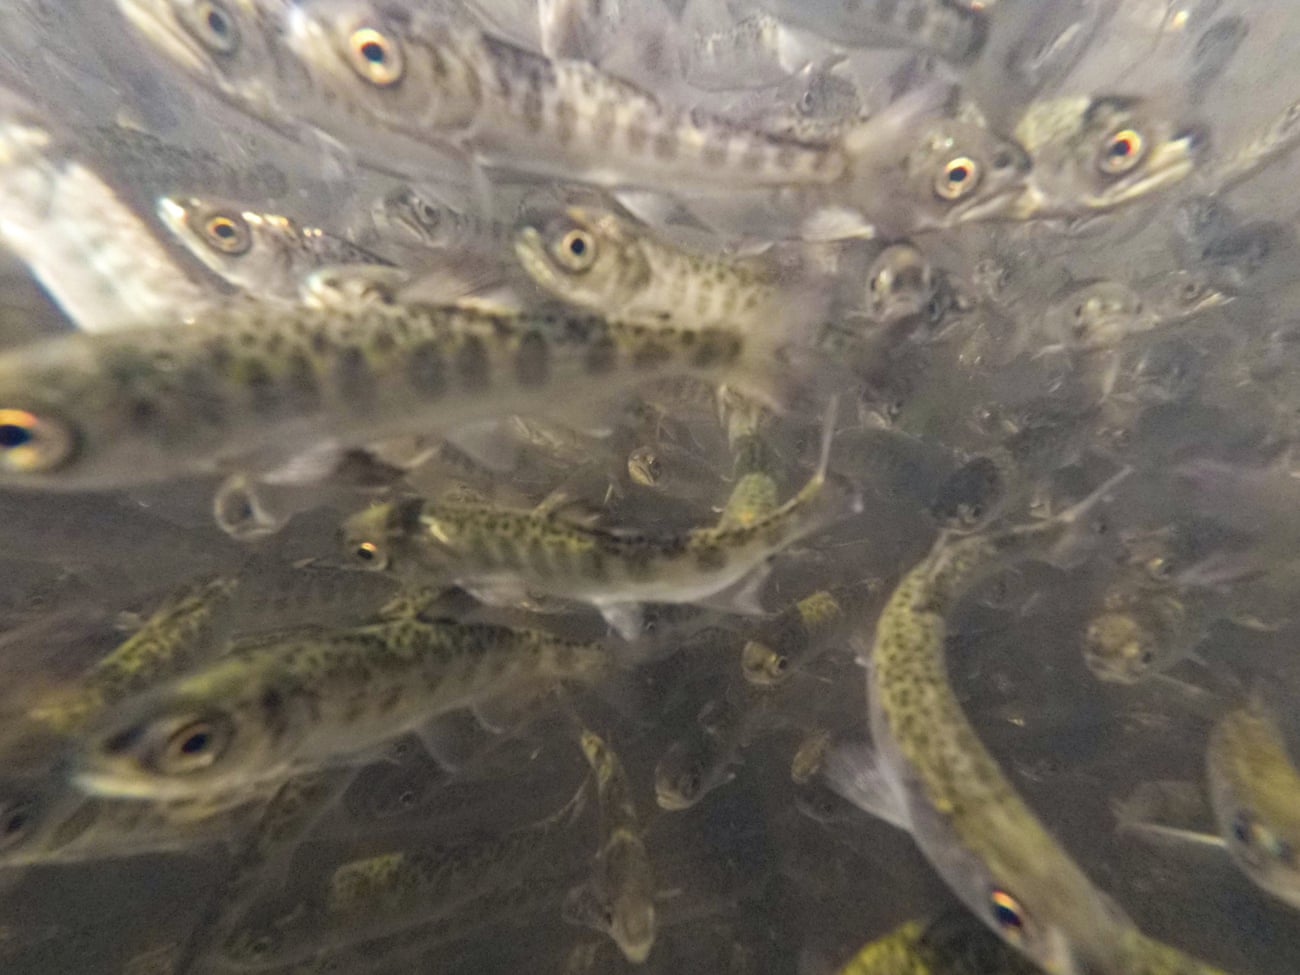 close up of fish